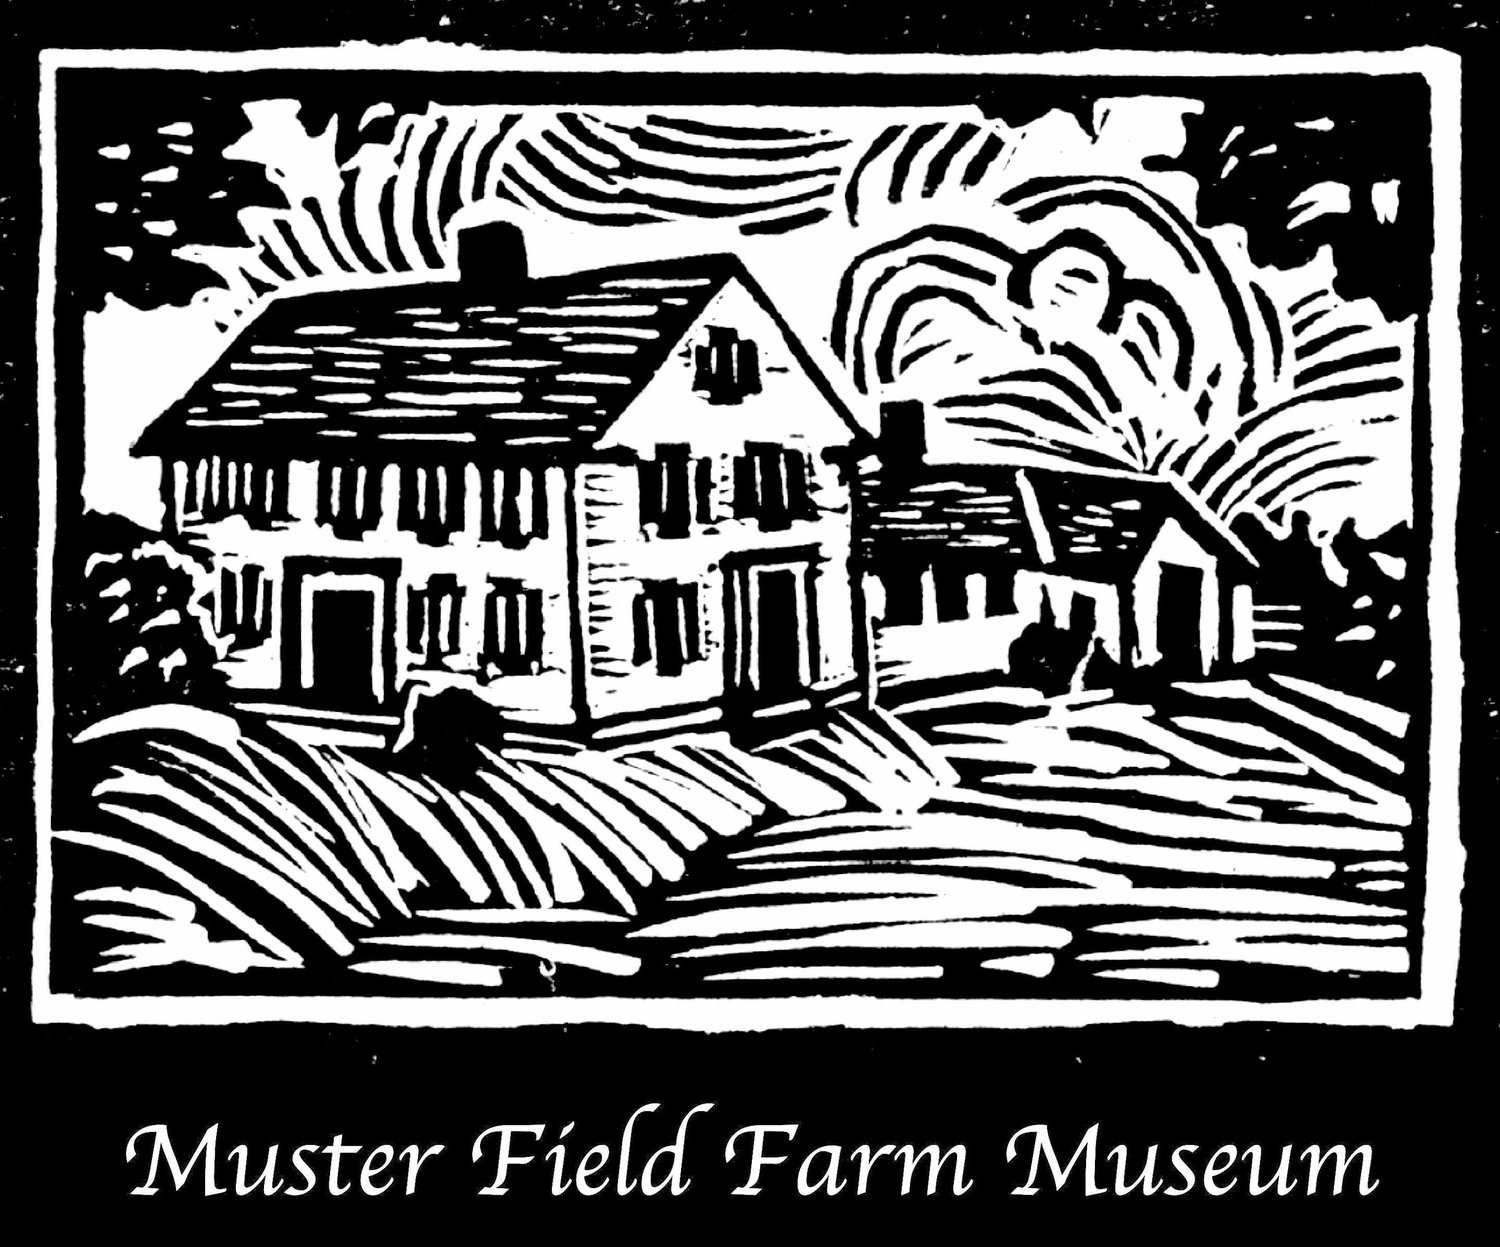 Muster Field Farm Museum